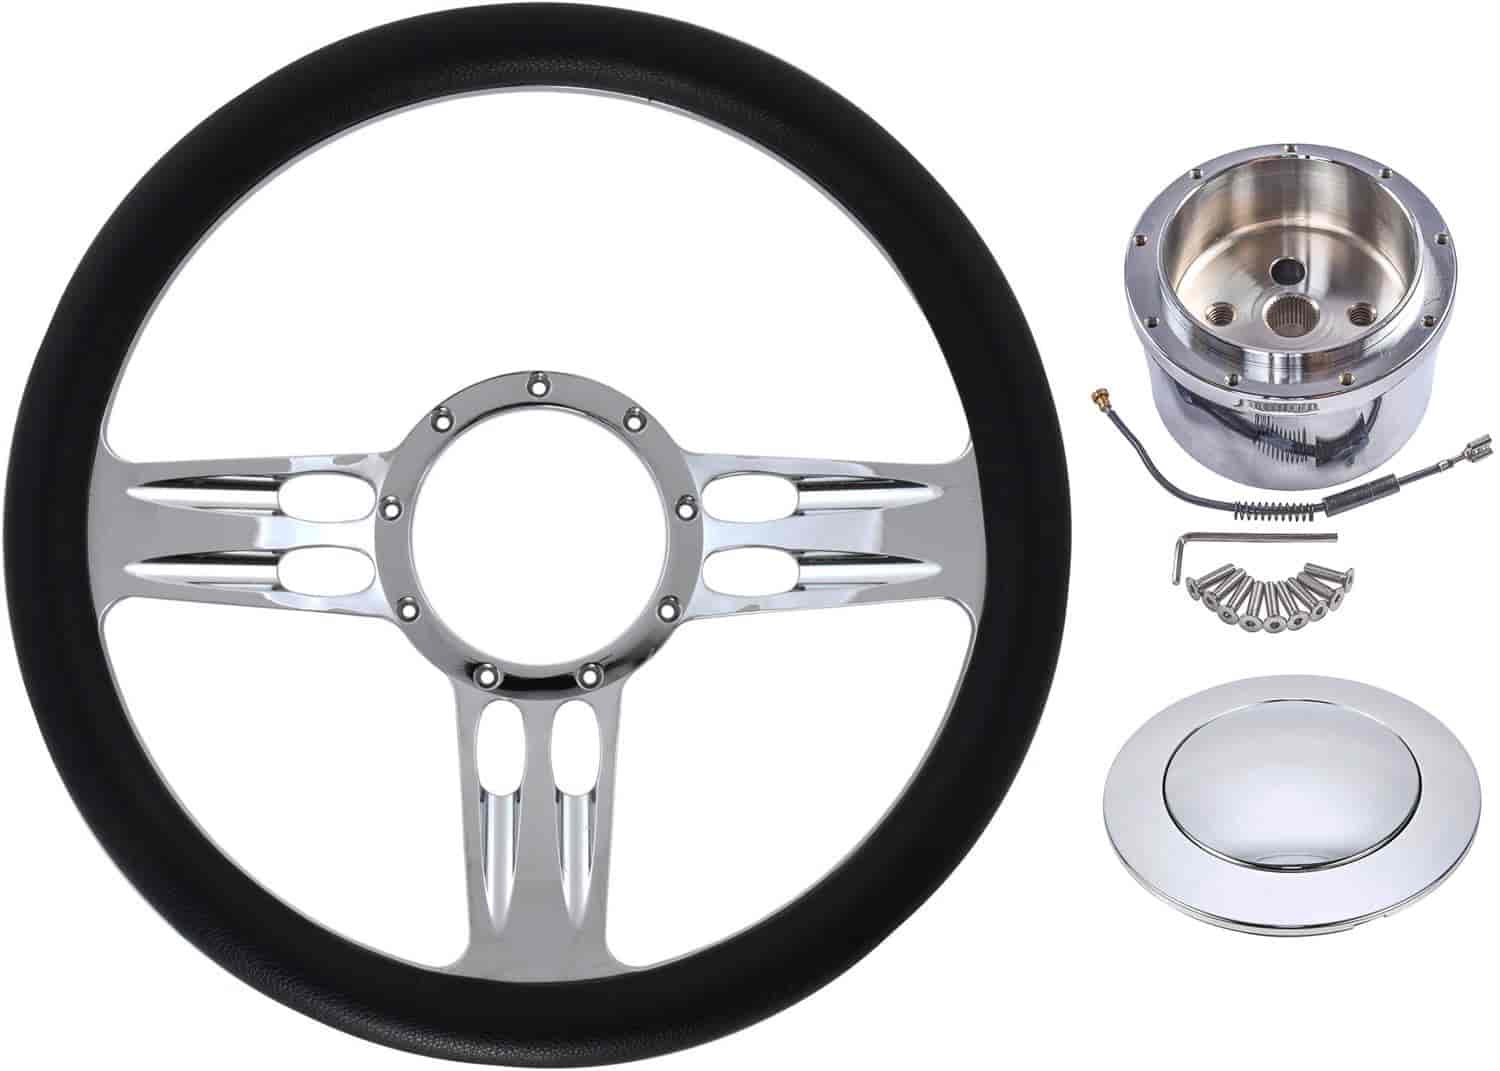 Chrome-Plated Billet Aluminum 14 in. Steering Wheel Kit [3-Slot Spoke Design]